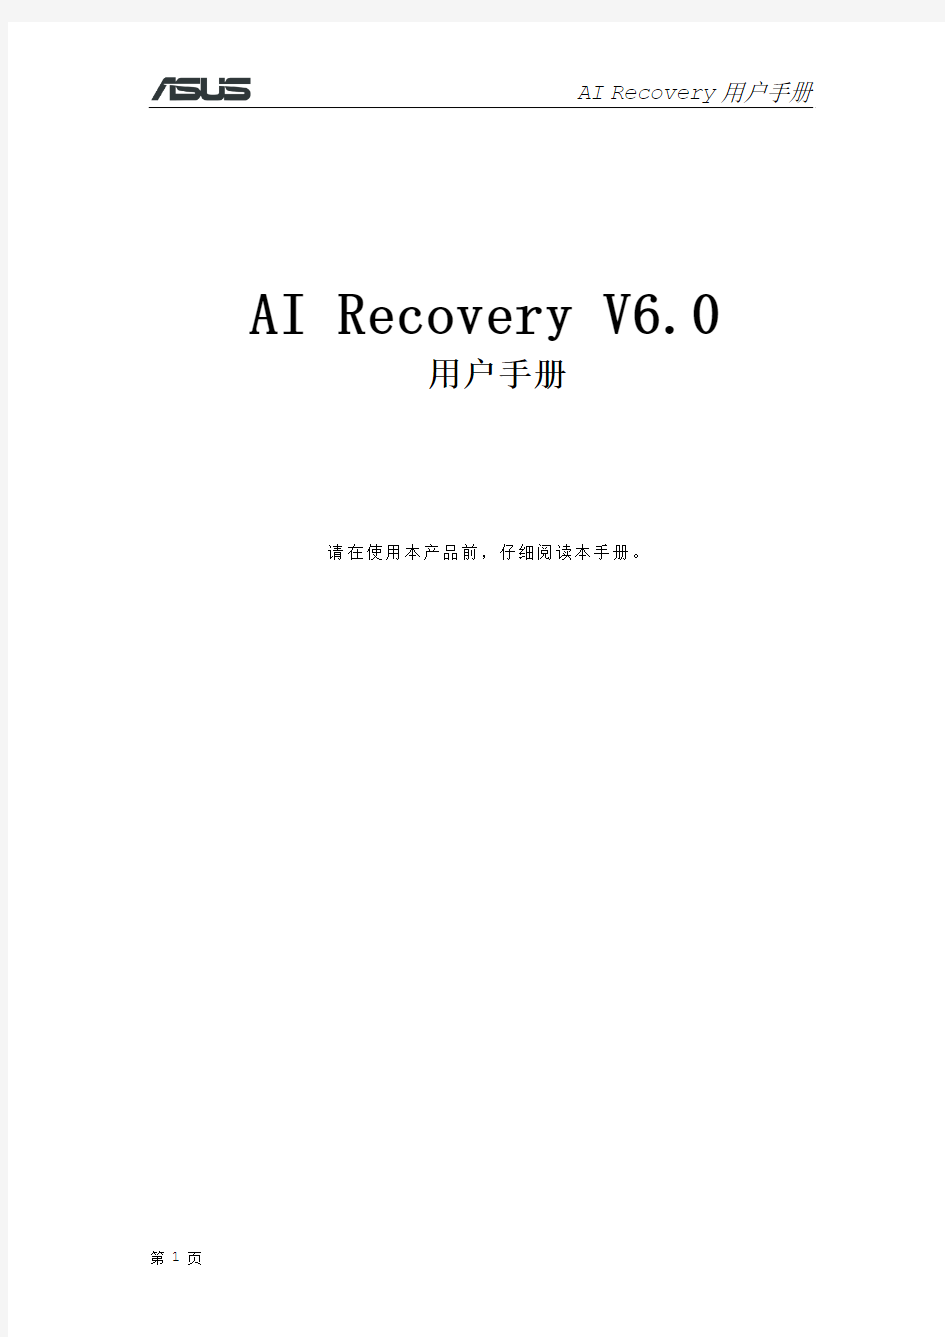 AI RECOVERY用户手册